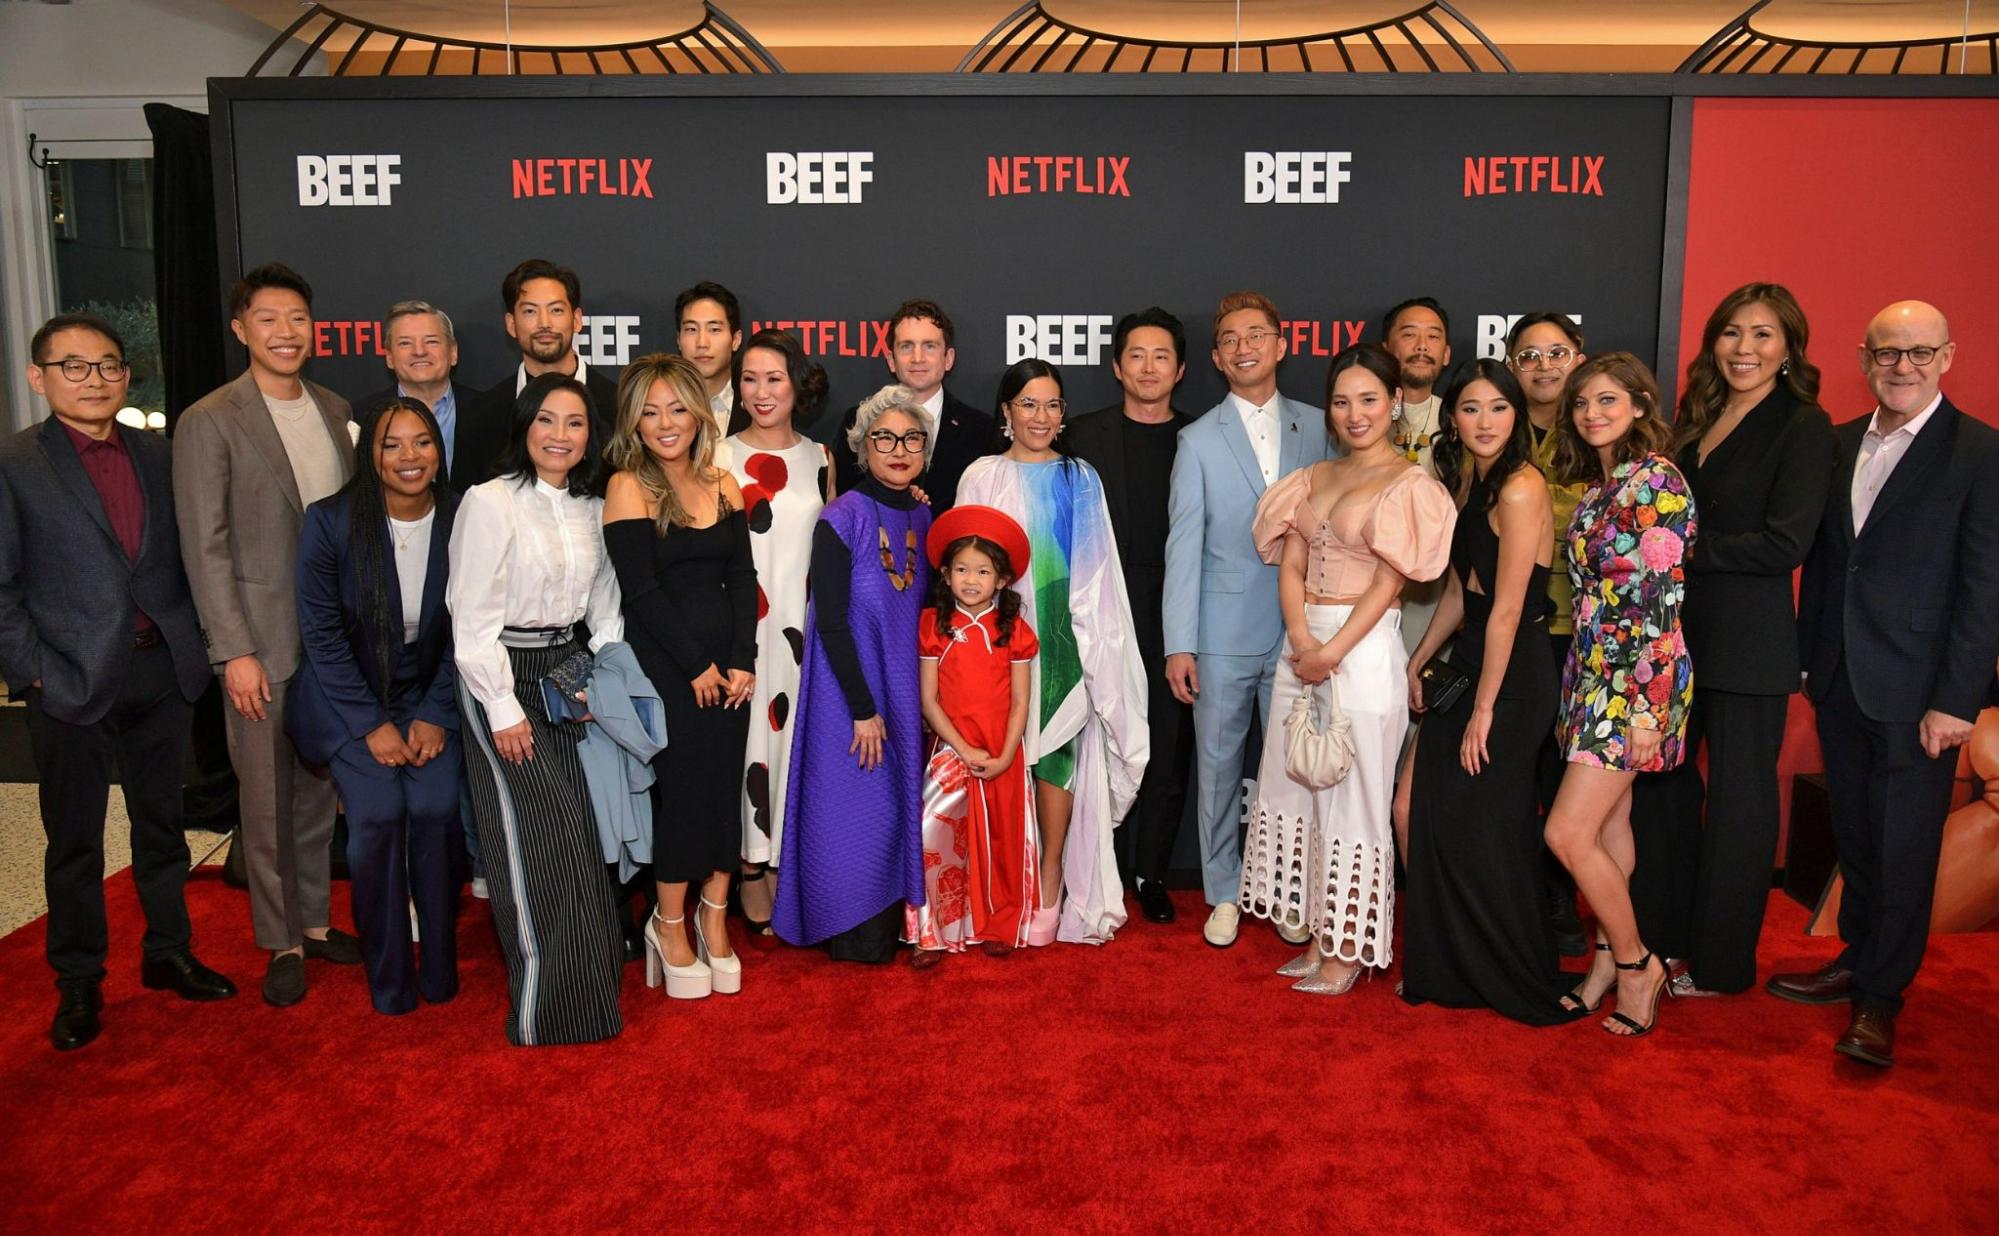  Foto da equipe da série Treta. Todos estão com roupas de gala em frente a uma parede com vários escritos repetidos das palavras “Netflix” e “Beef”. Todas as vinte e duas pessoas estão acima de um tapete vermelho e são majoritariamente asiático-americanos.